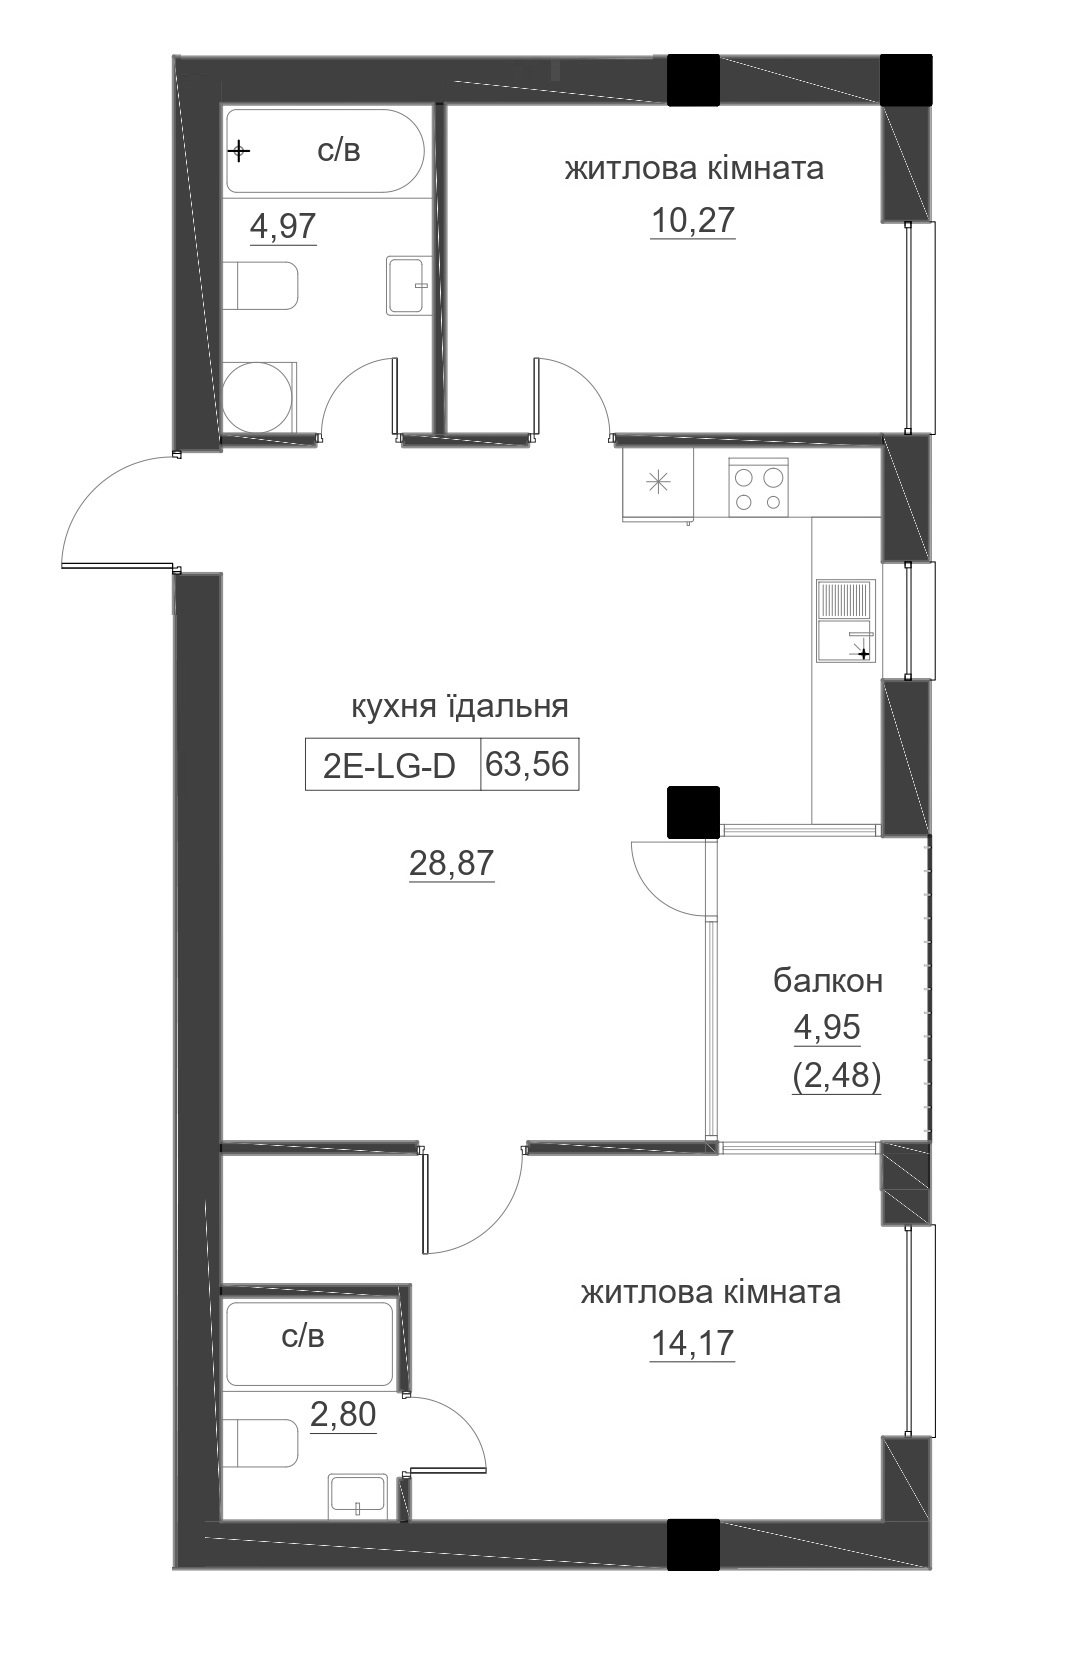 Планування 2-к квартира площею 63.56м2, LR-005-03/0005.